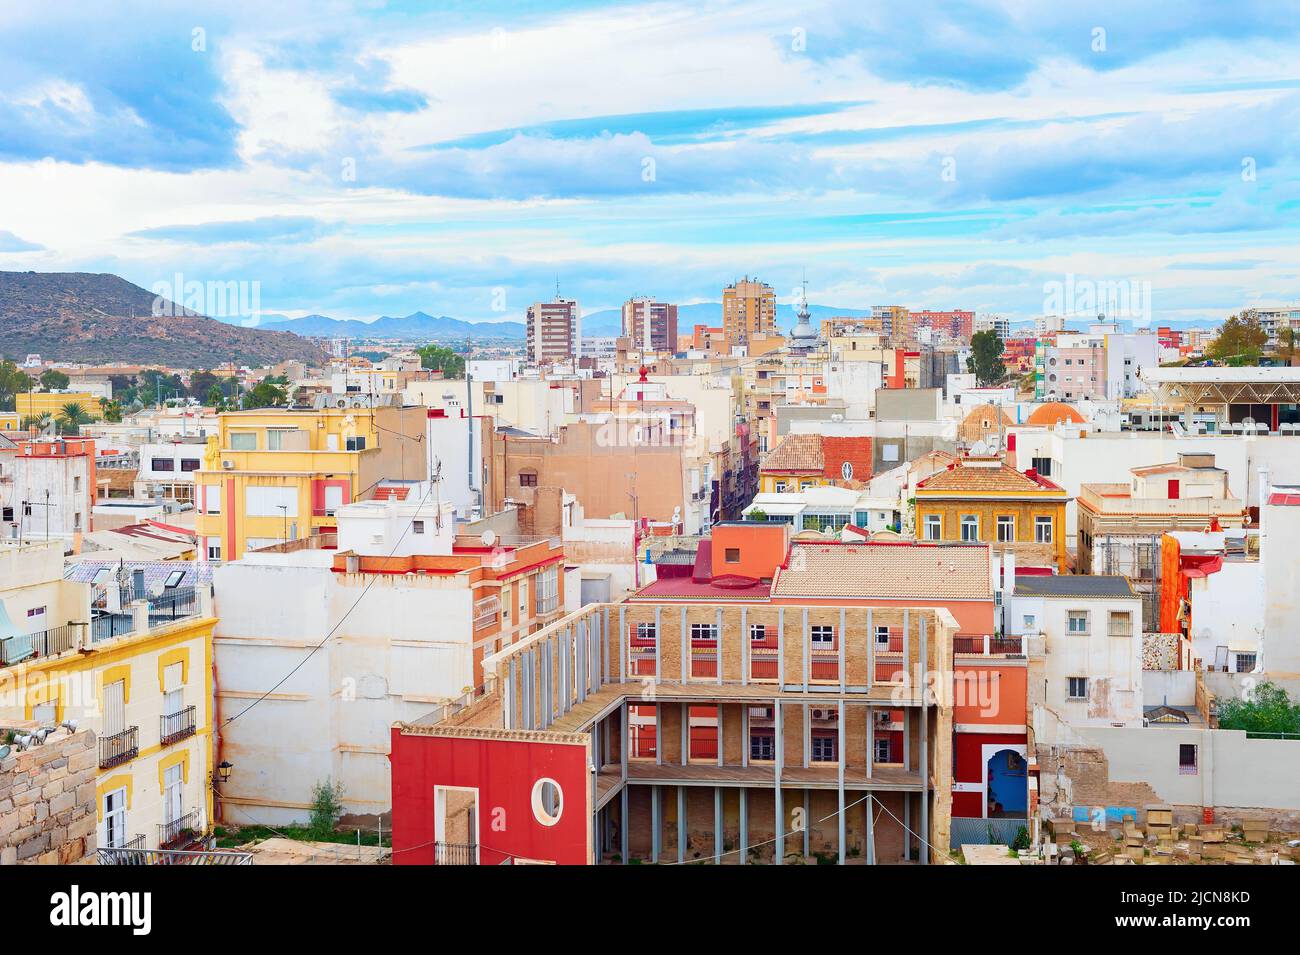 Paisaje urbano de Cartagena, coloridas casas y montañas en el fondo, España Foto de stock